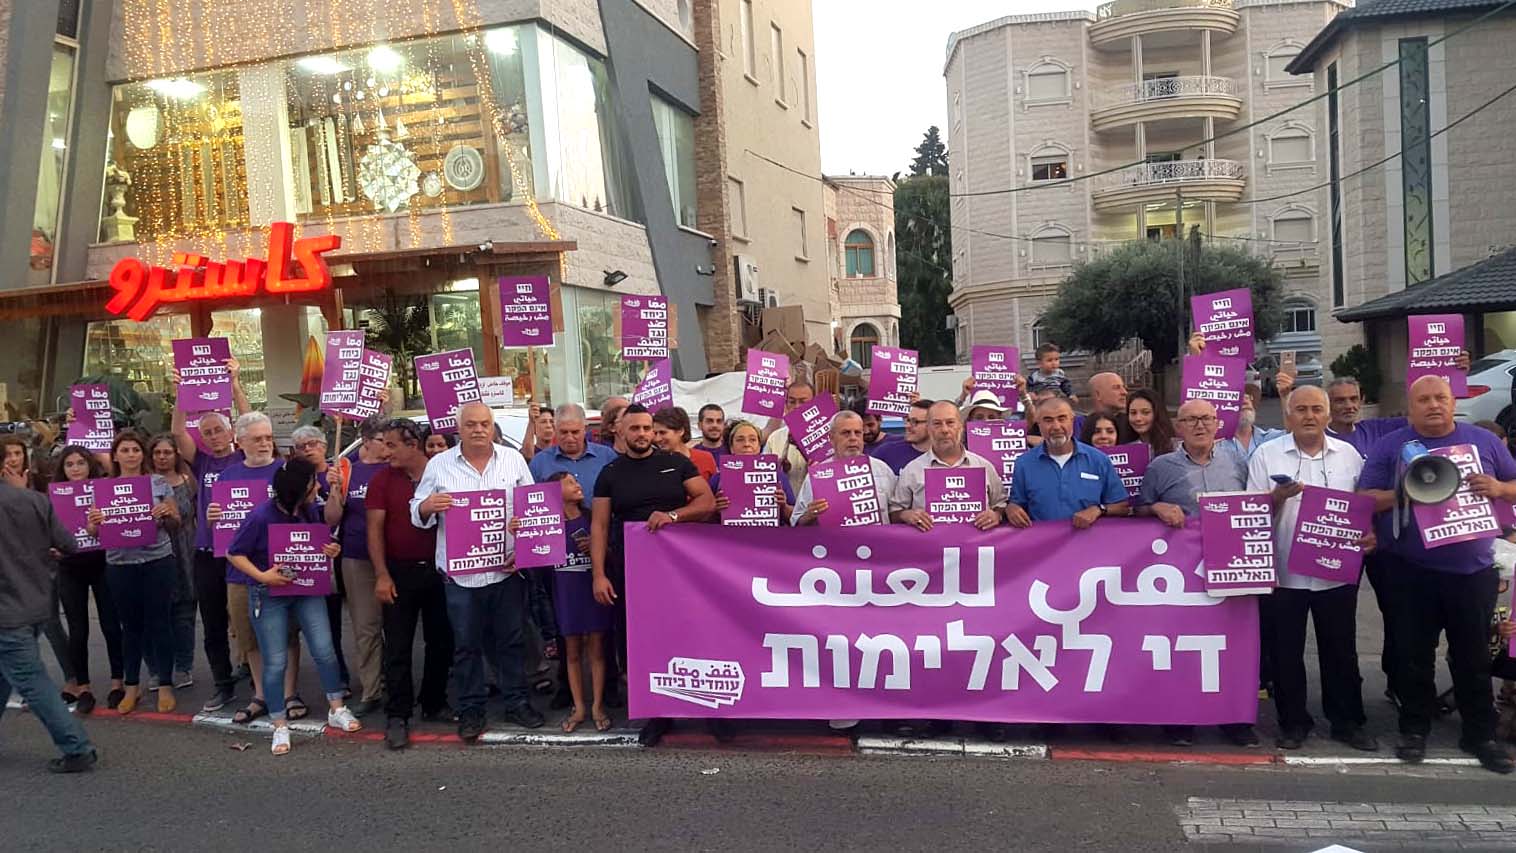 הפגנה של תנועת 'עומדים ביחד' בטמרה בדרישה לטיפול ממשלתי באלימות ובפשיעה בחברה הערבית, 12 באוקטובר 2019 (צילום: שי ניר)